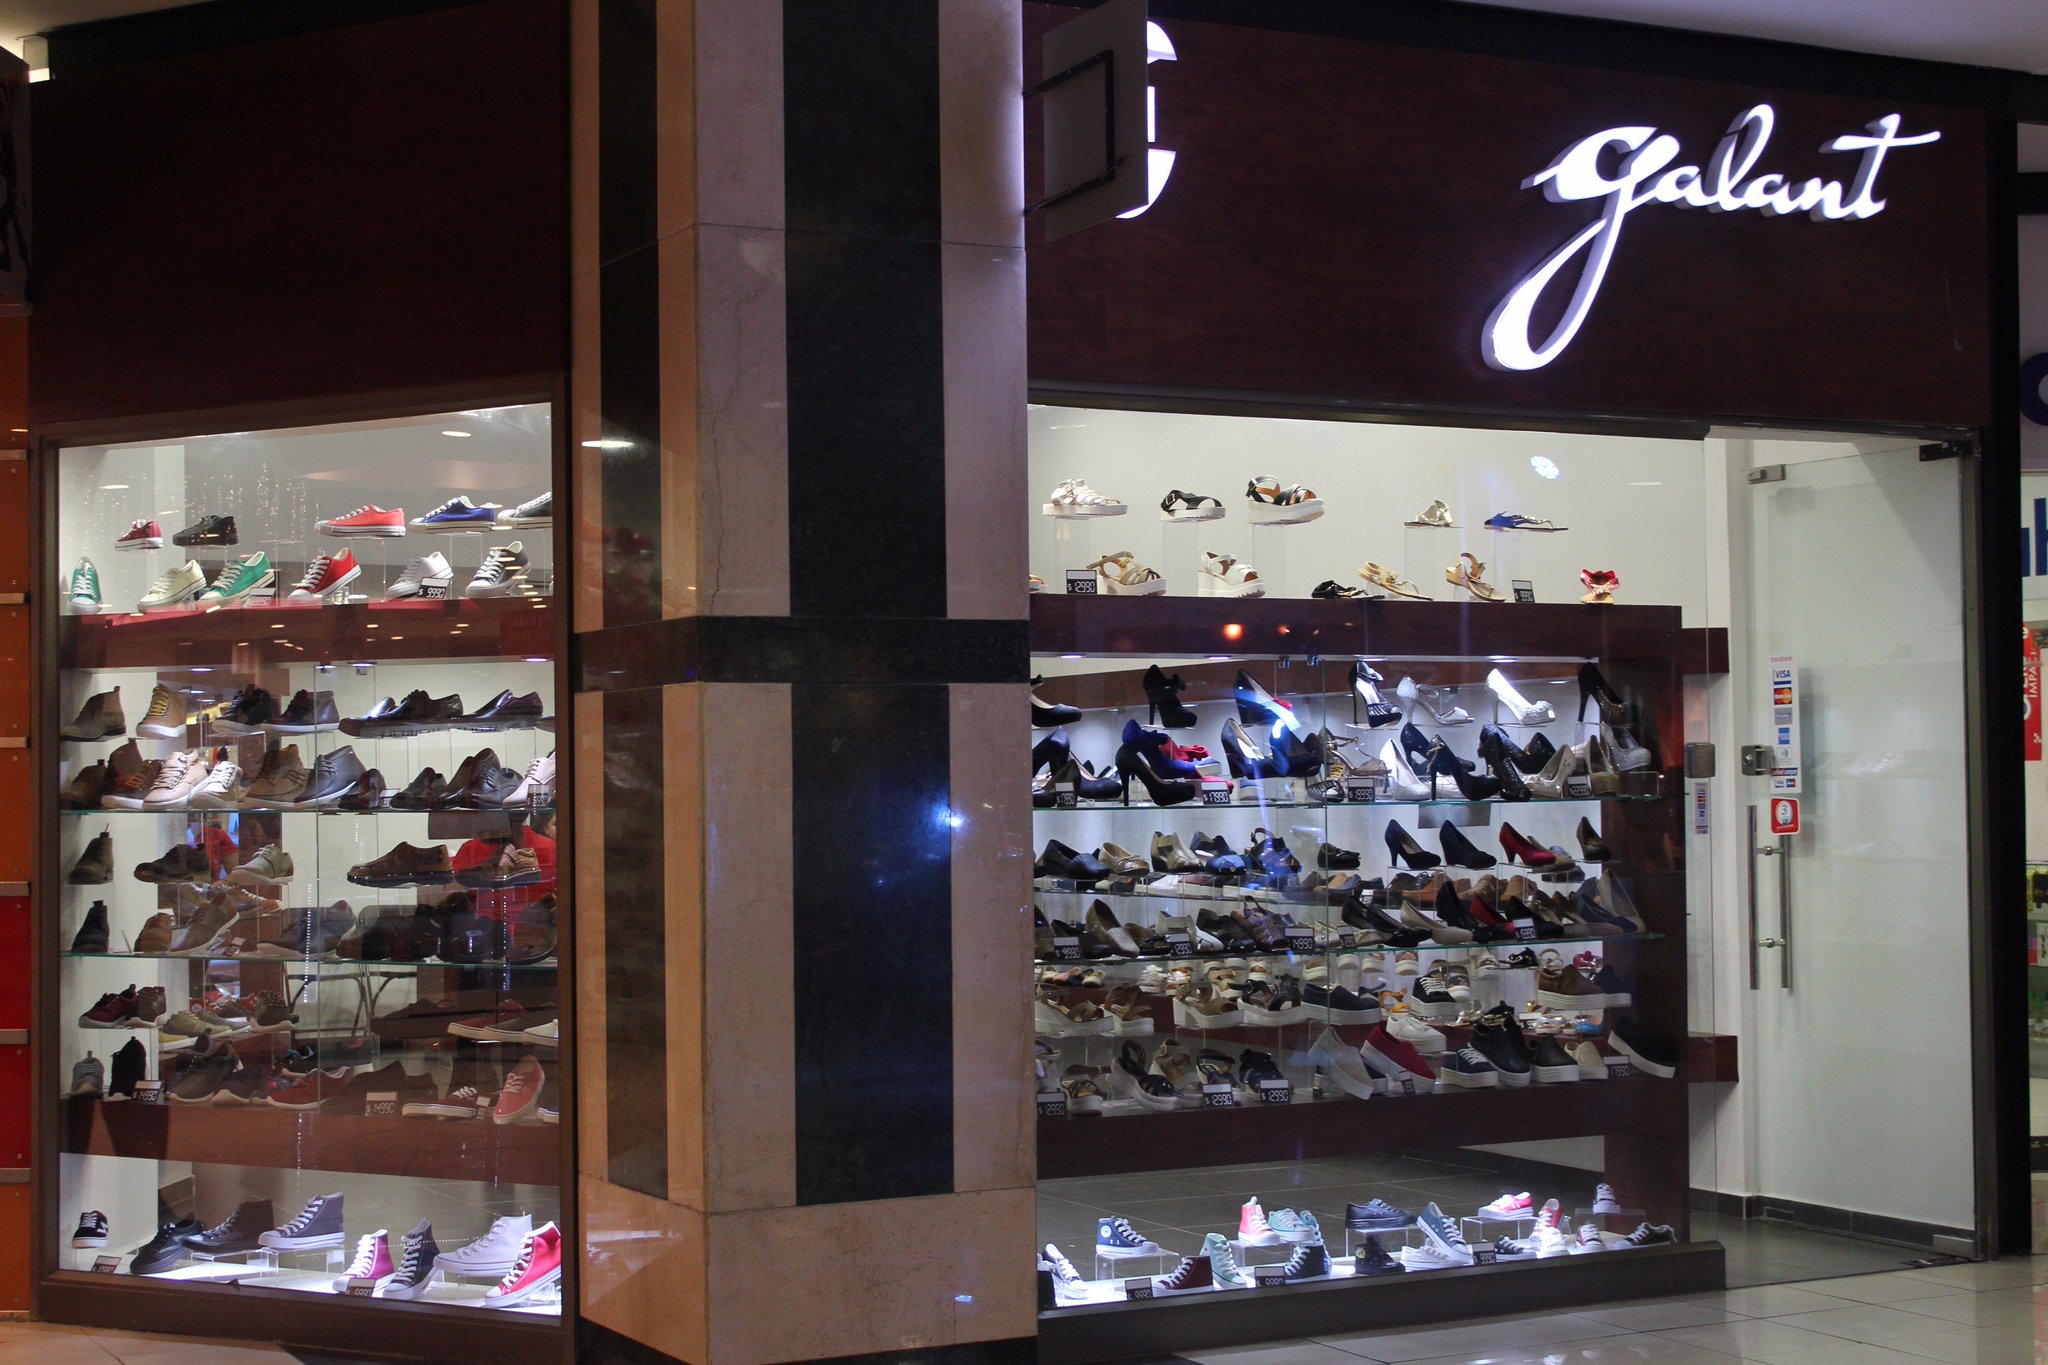 MallPaseoSanBernardo on Twitter: "Ven a conocer nuestra nueva tienda "Calzados  Galant" en Mall Paseo San Bernardo, Tu Mall... https://t.co/378UJEdUPv" /  Twitter